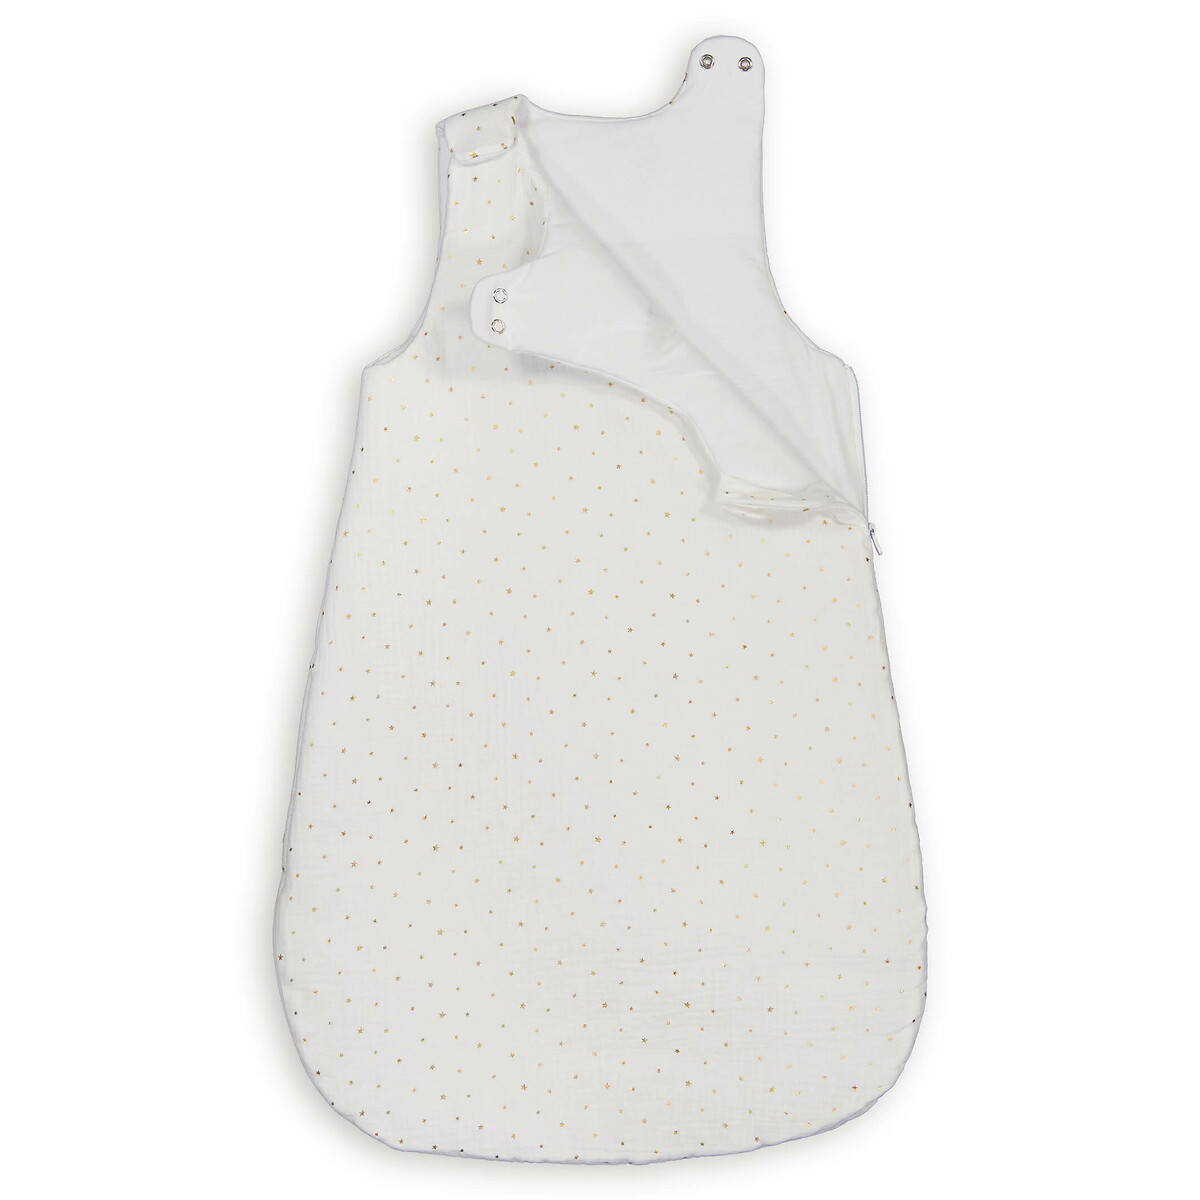 Конверт LA REDOUTE INTERIEURS Конверт Для новорожденных из хлопчатобумажной газовой ткани 2 года - 86 см белый, размер 2 года - 86 см - фото 3